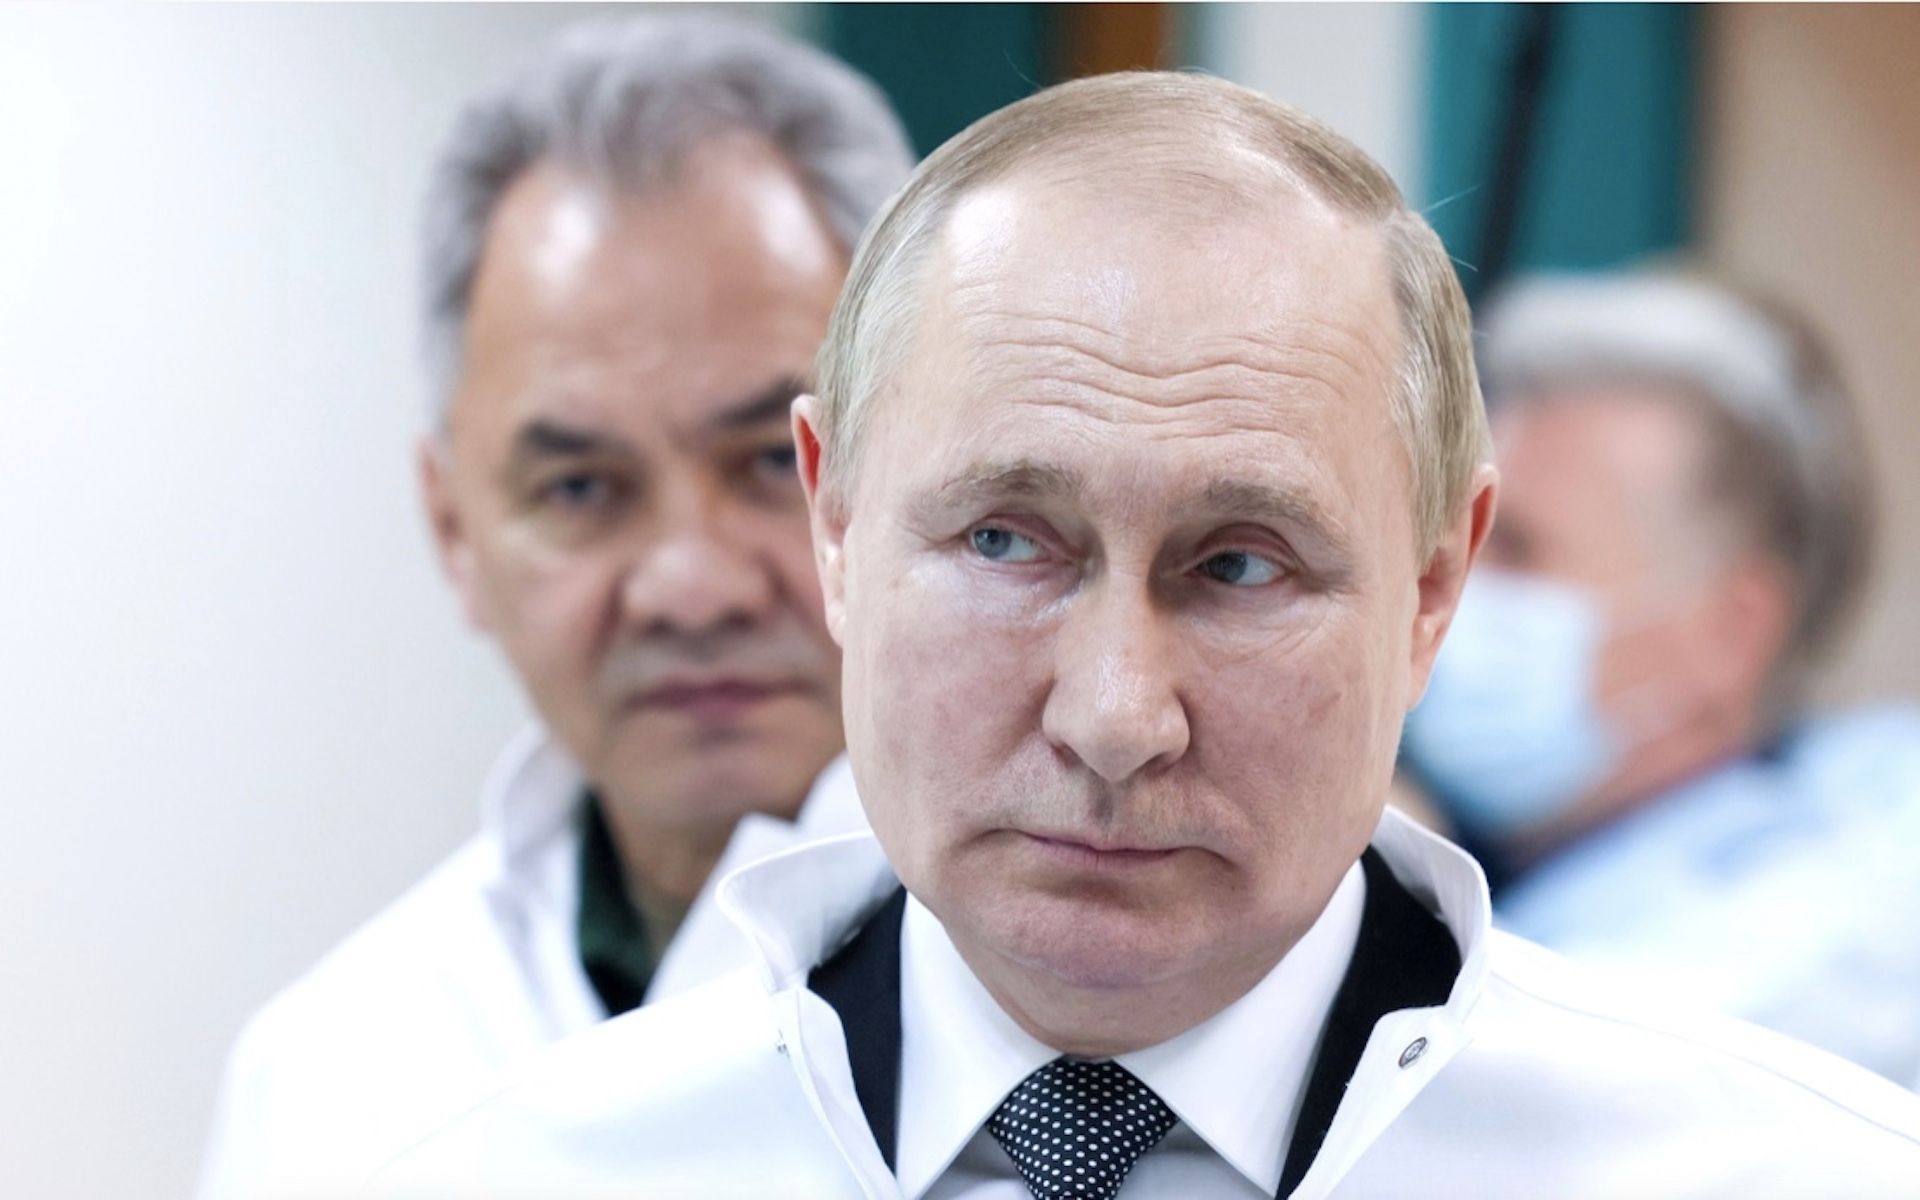 Władimir Putin źle się poczuł, potrzebował "pilnej pomocy medycznej"